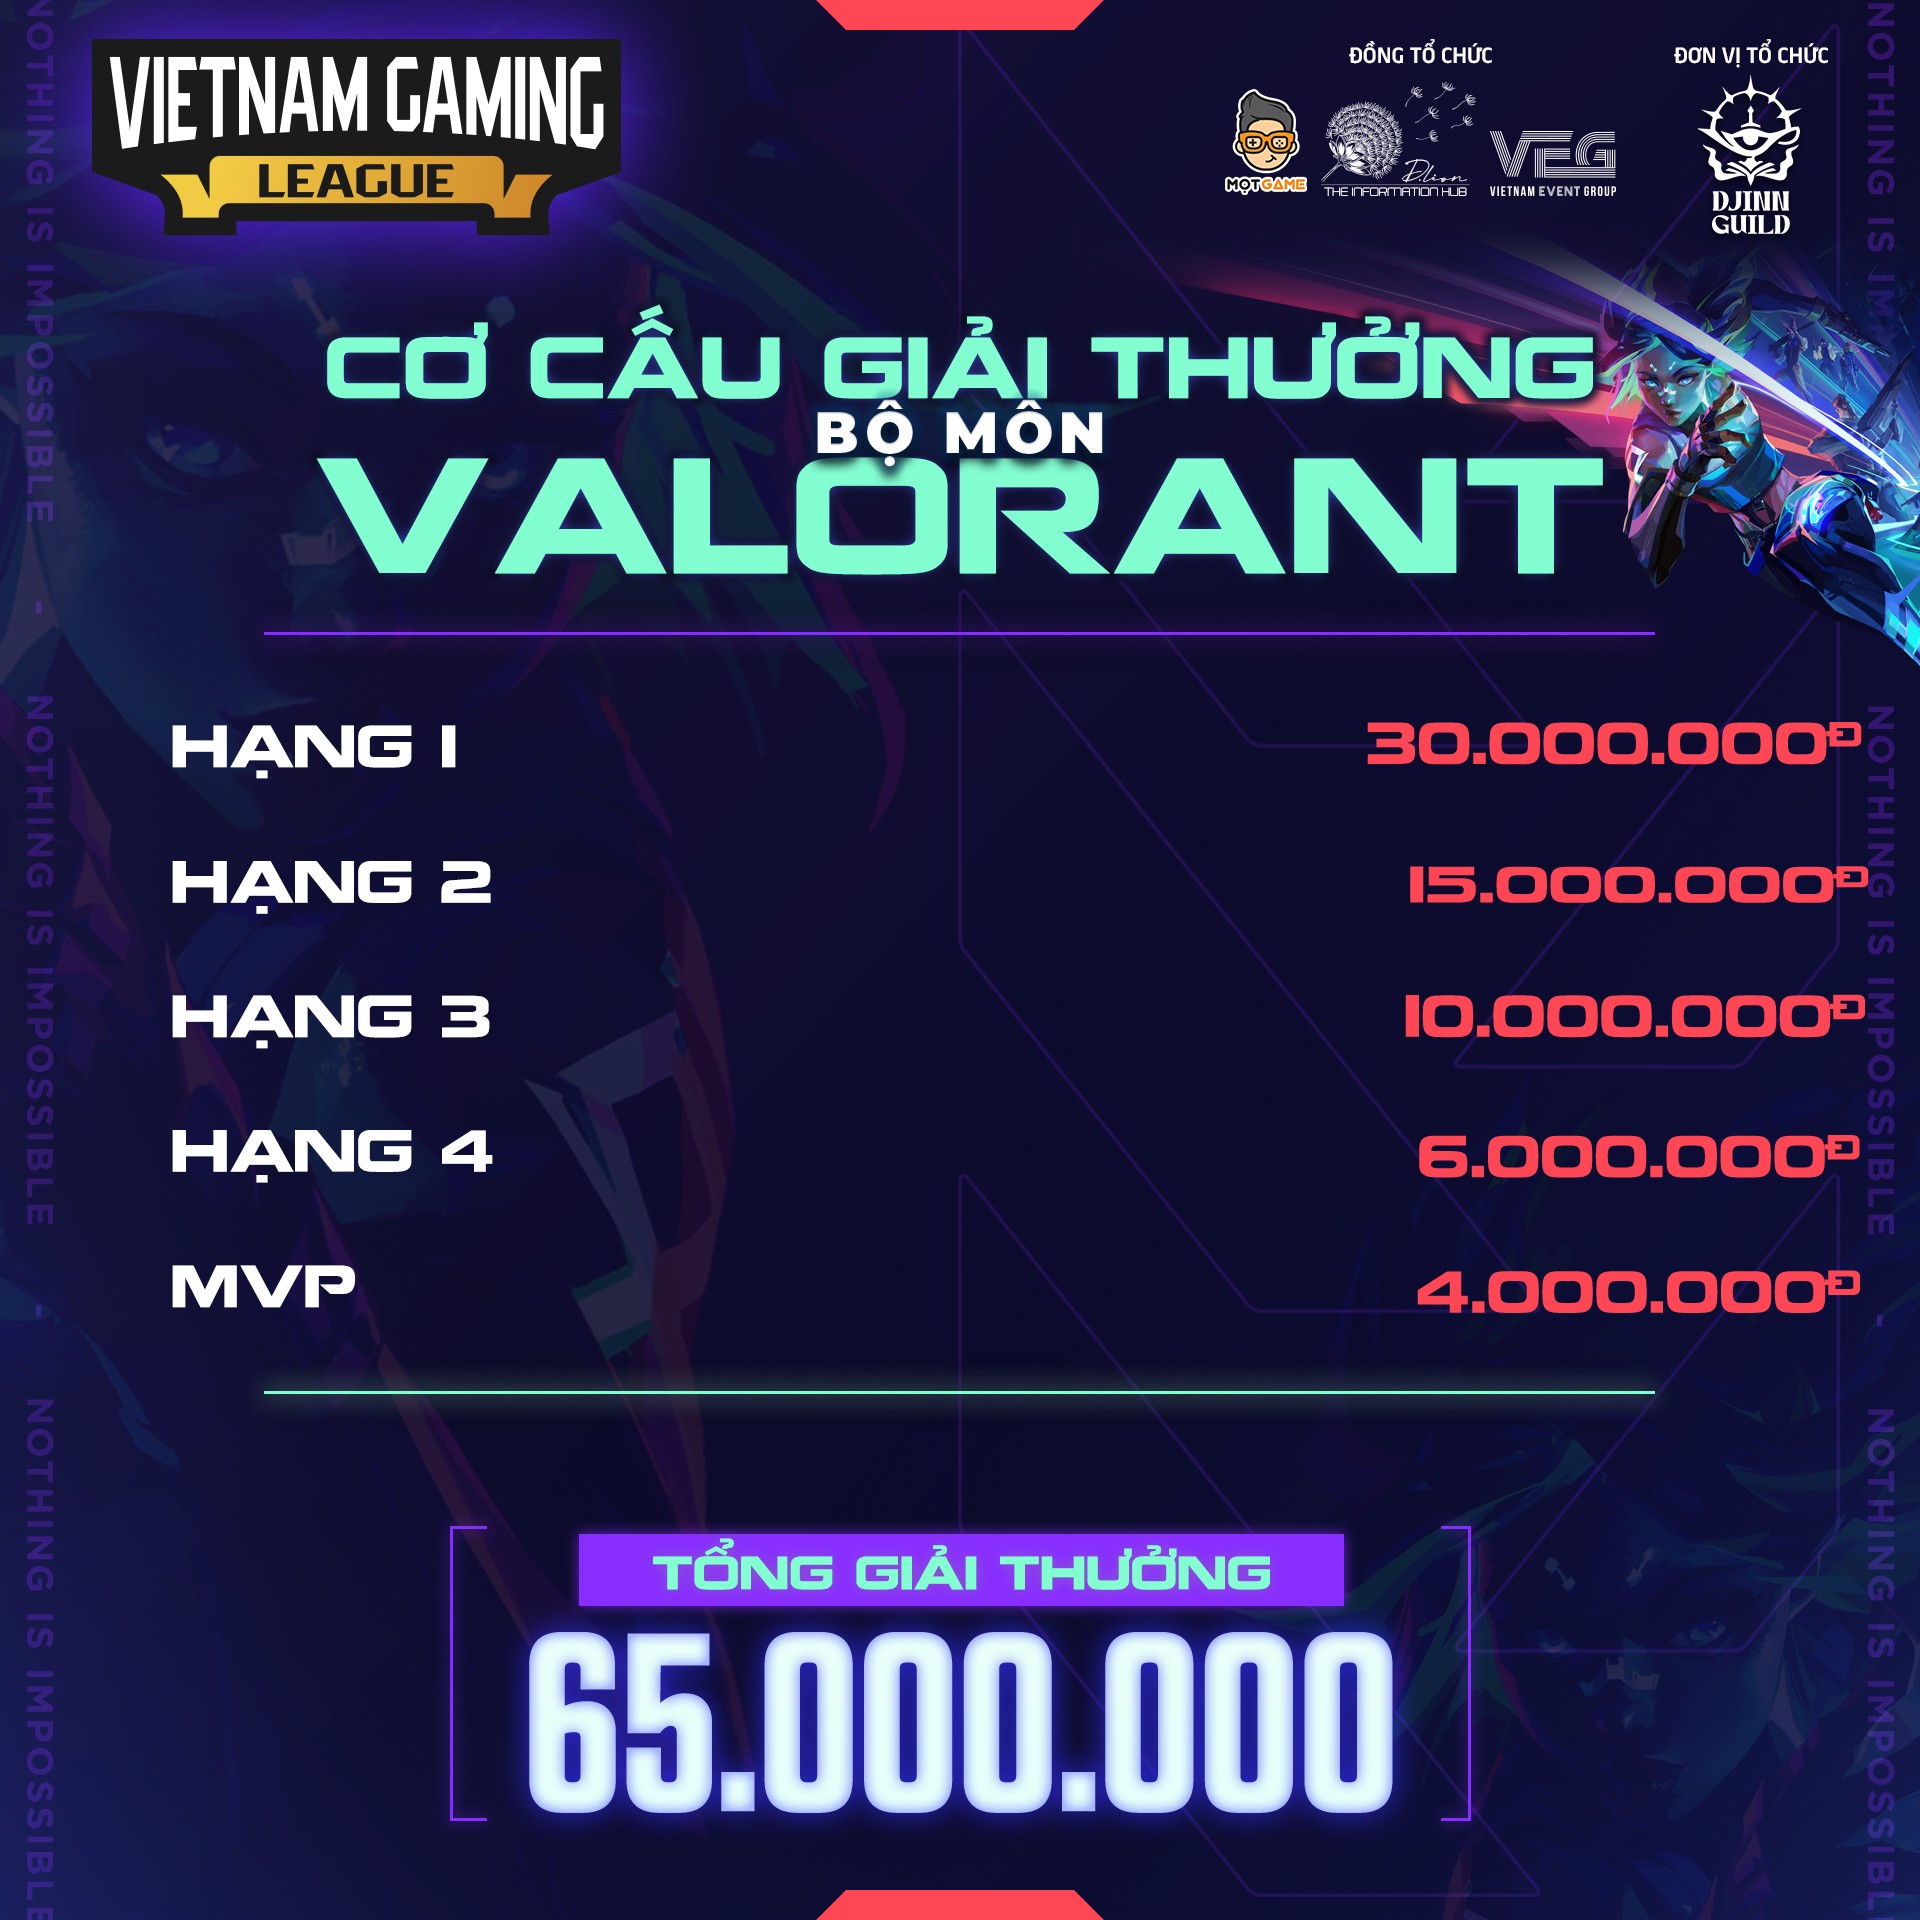 Giải đấu Vietnam Gaming League - Valorant Community Tournament có gì mà hút gamer đến thế?